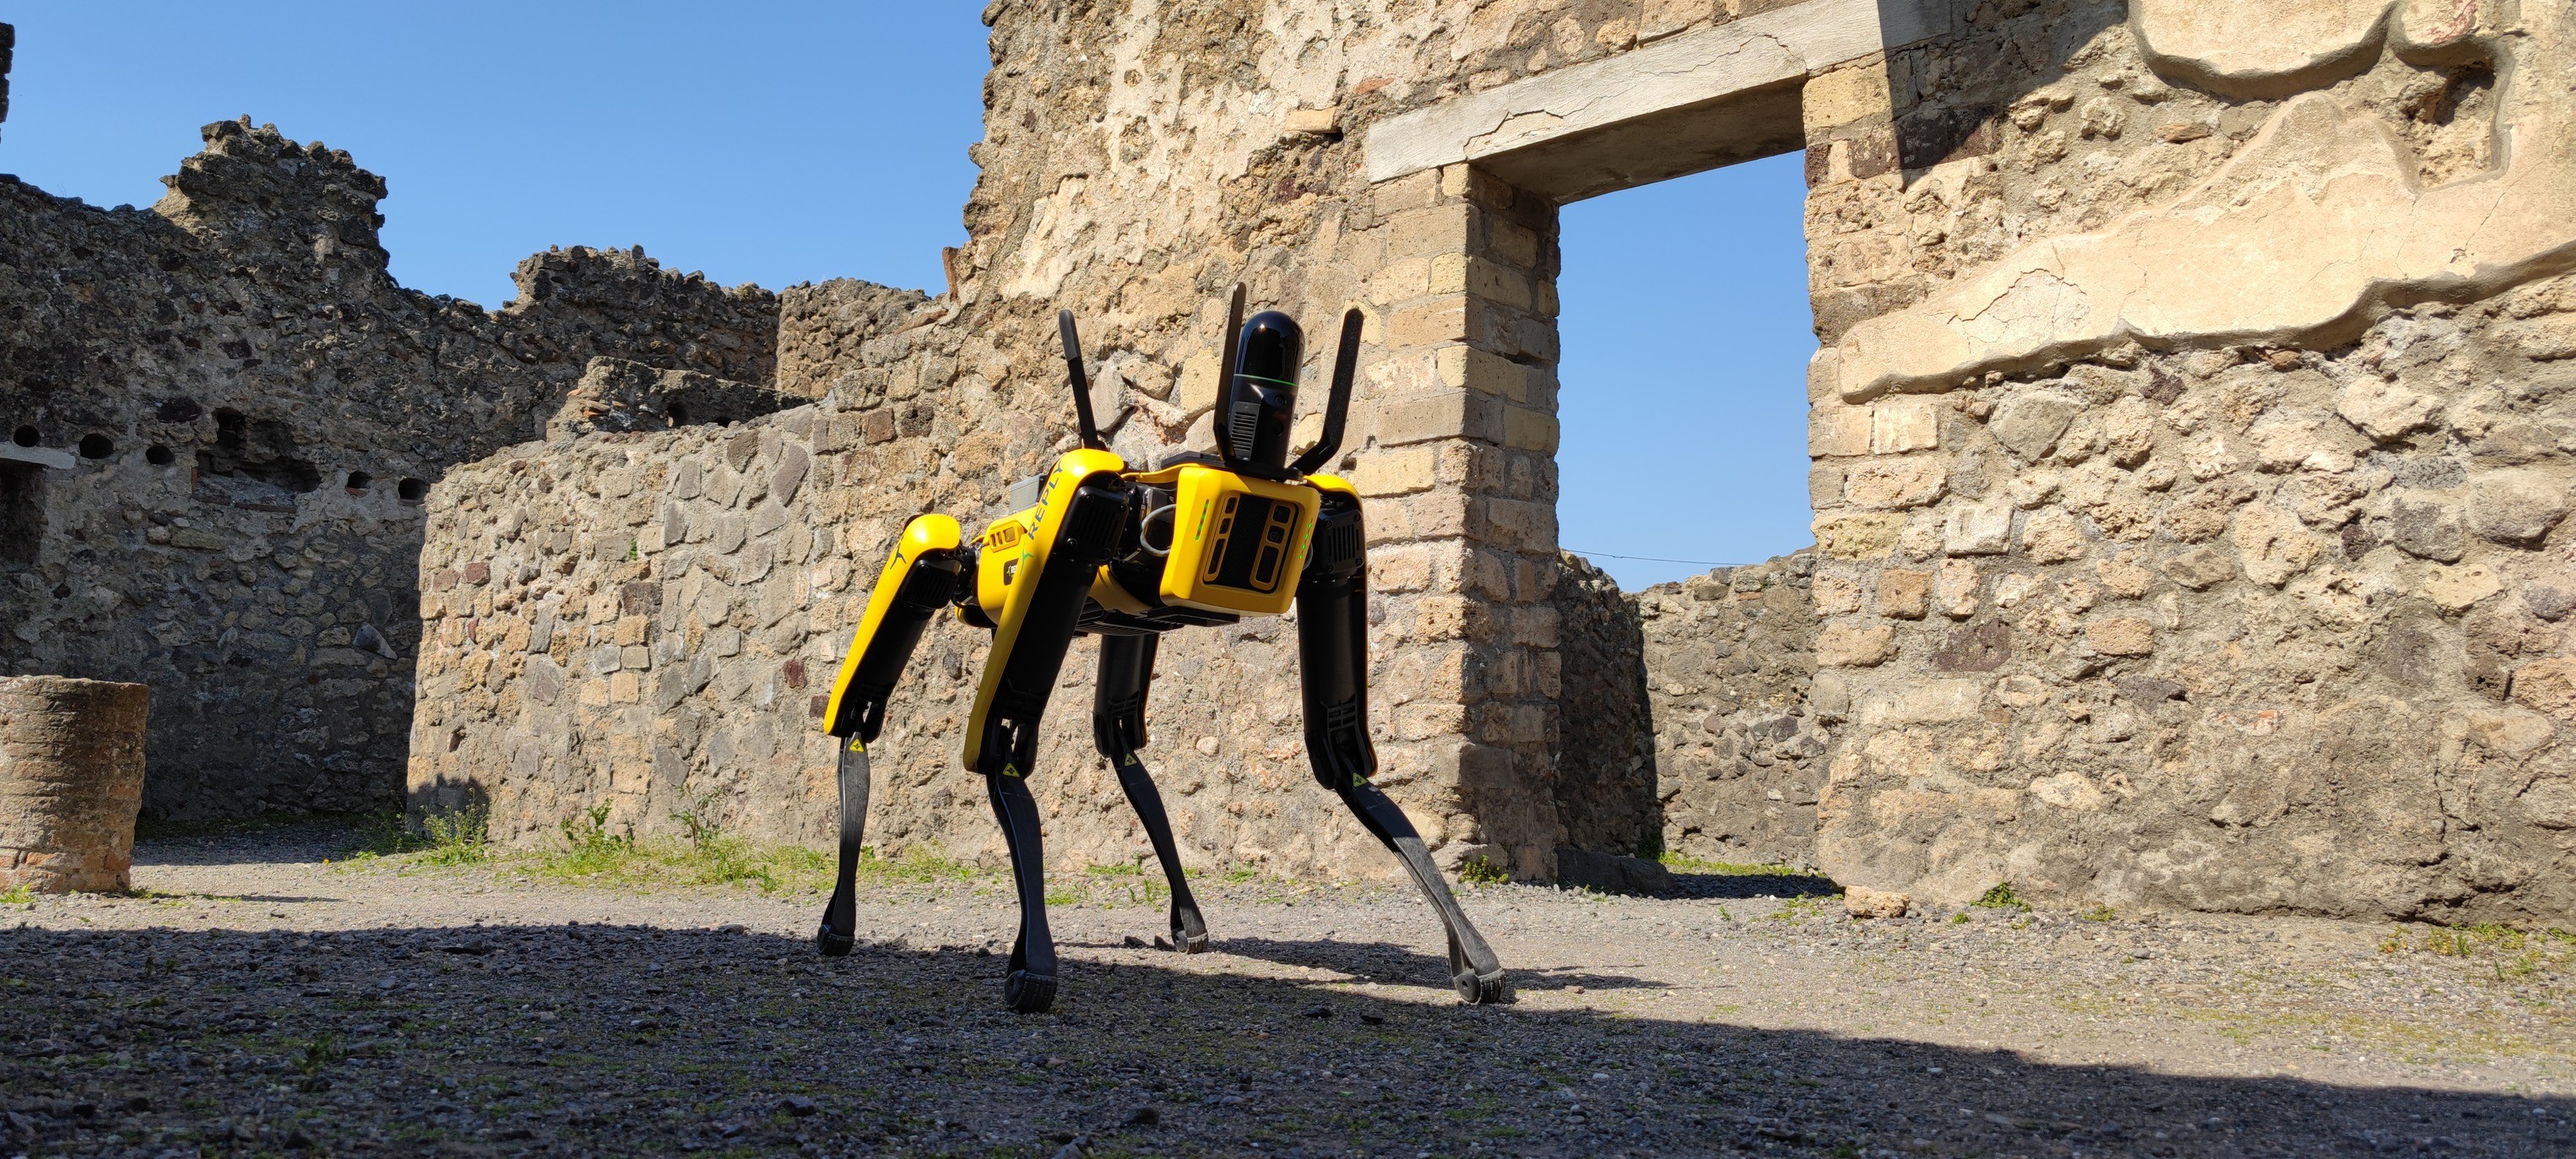  Spot, o cão de guarda robótico que cuida das ruínas de Pompeia  (Foto: Pompeii - Parco Archeologico/Reprodução/Facebook)